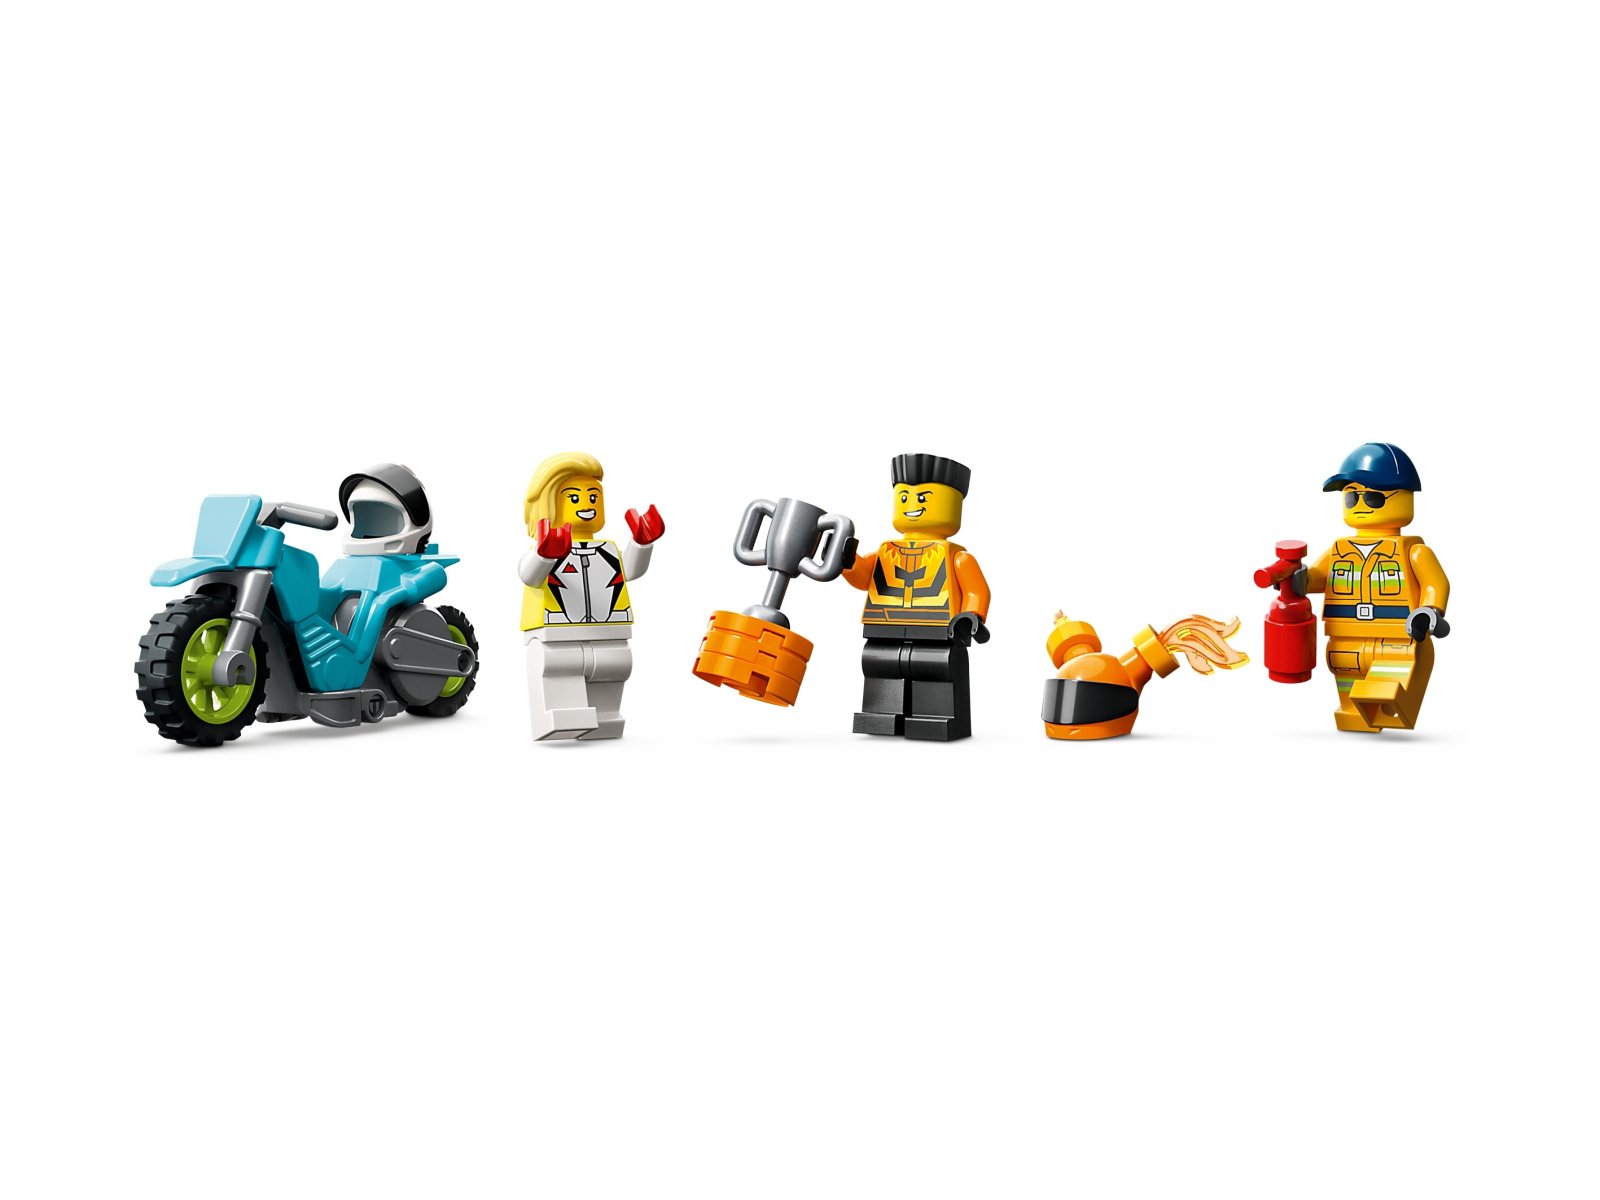 LEGO 60357 City Wyzwanie kaskaderskie — ciężarówka i ogniste obręcze